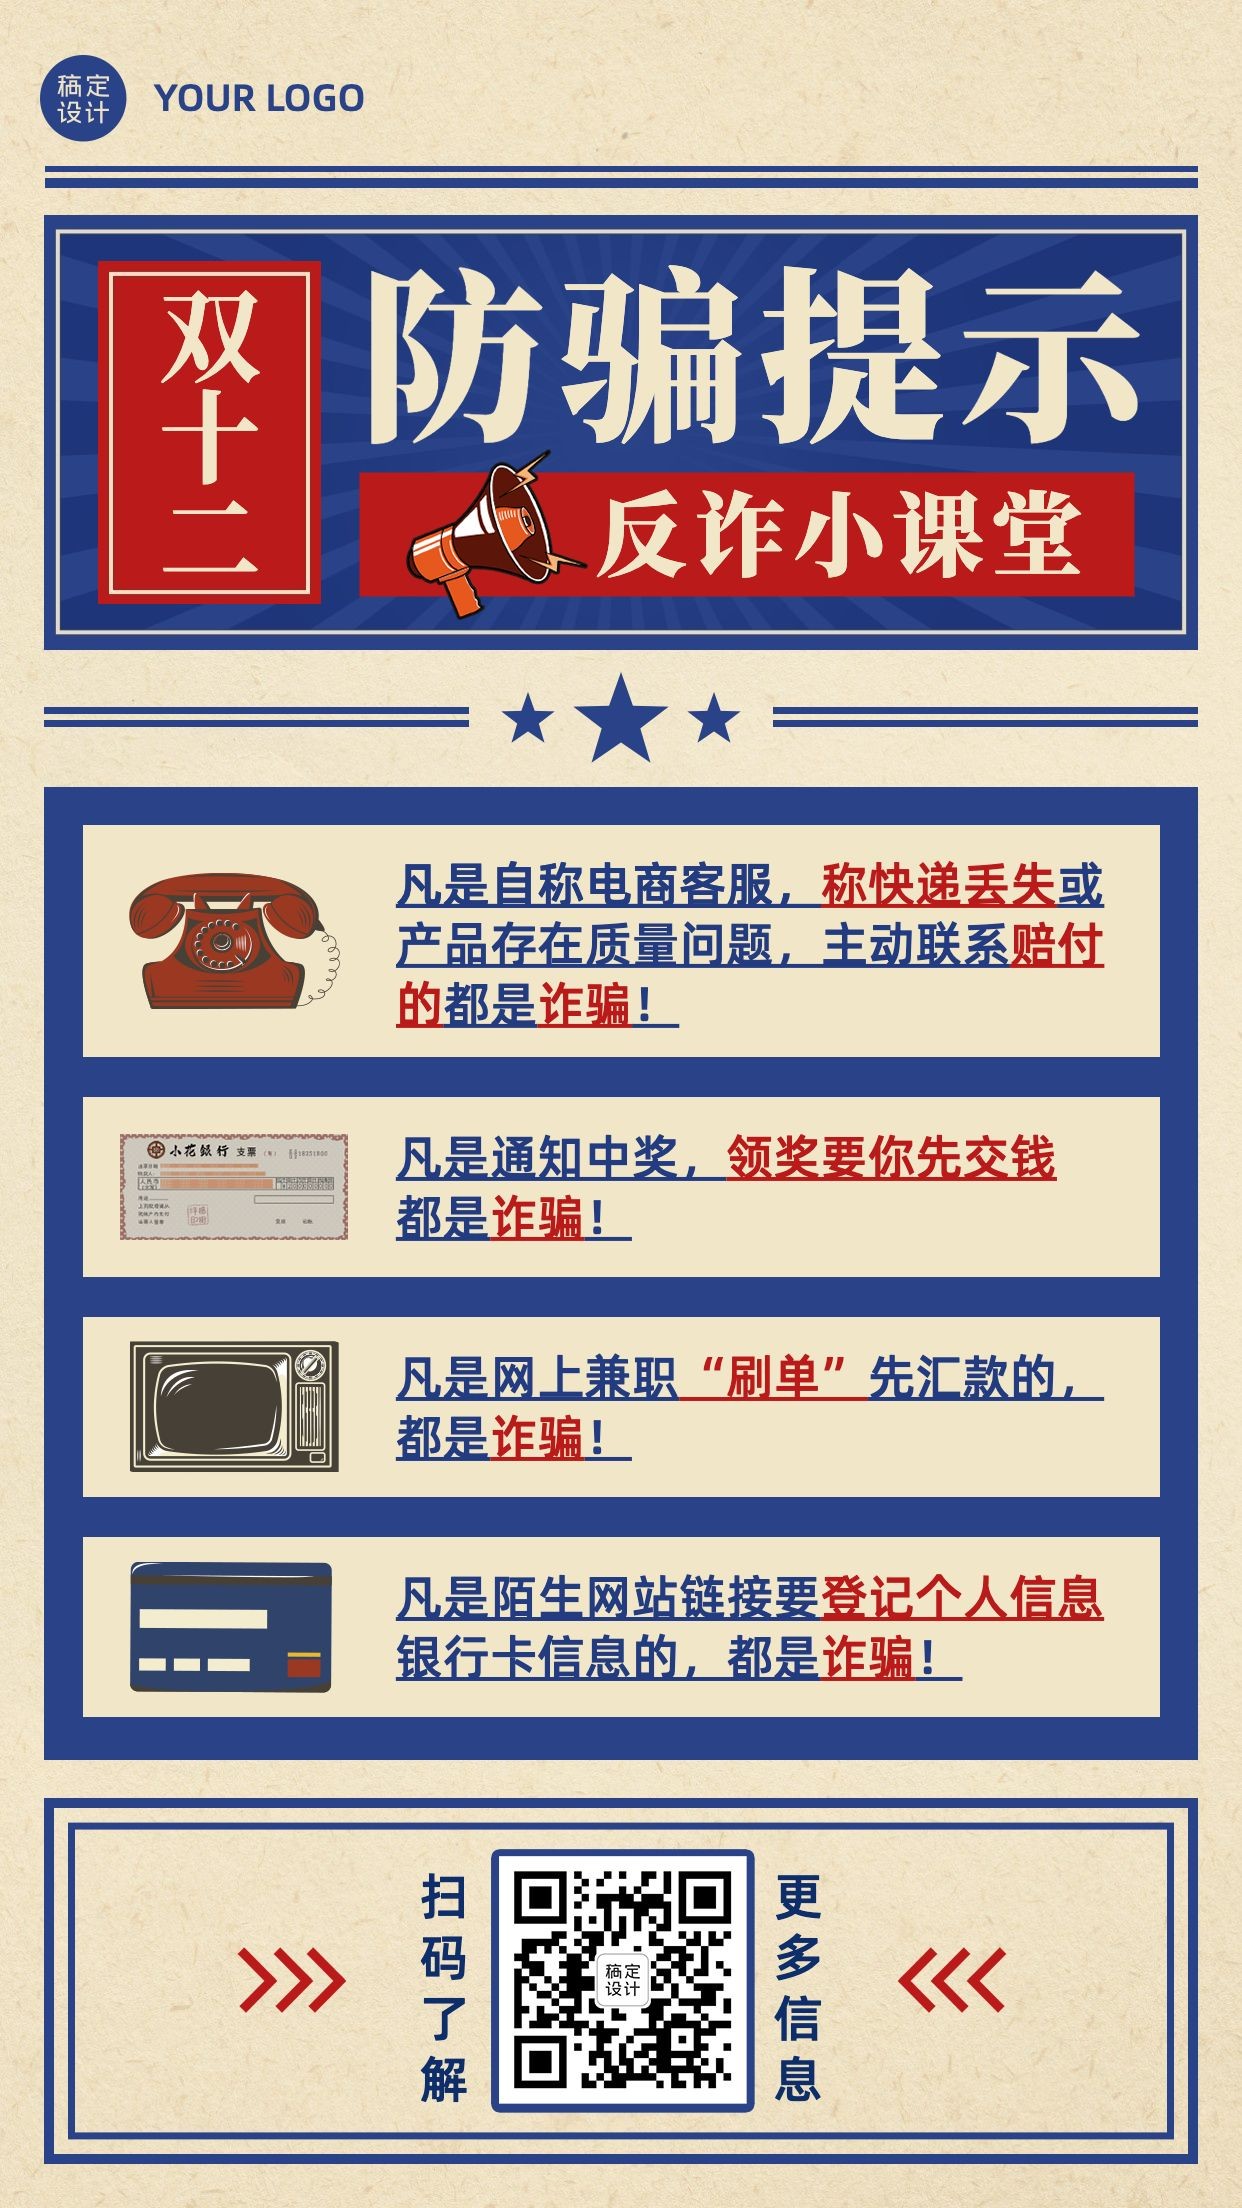 双十二活动网购消费提示反诈宣传手机海报